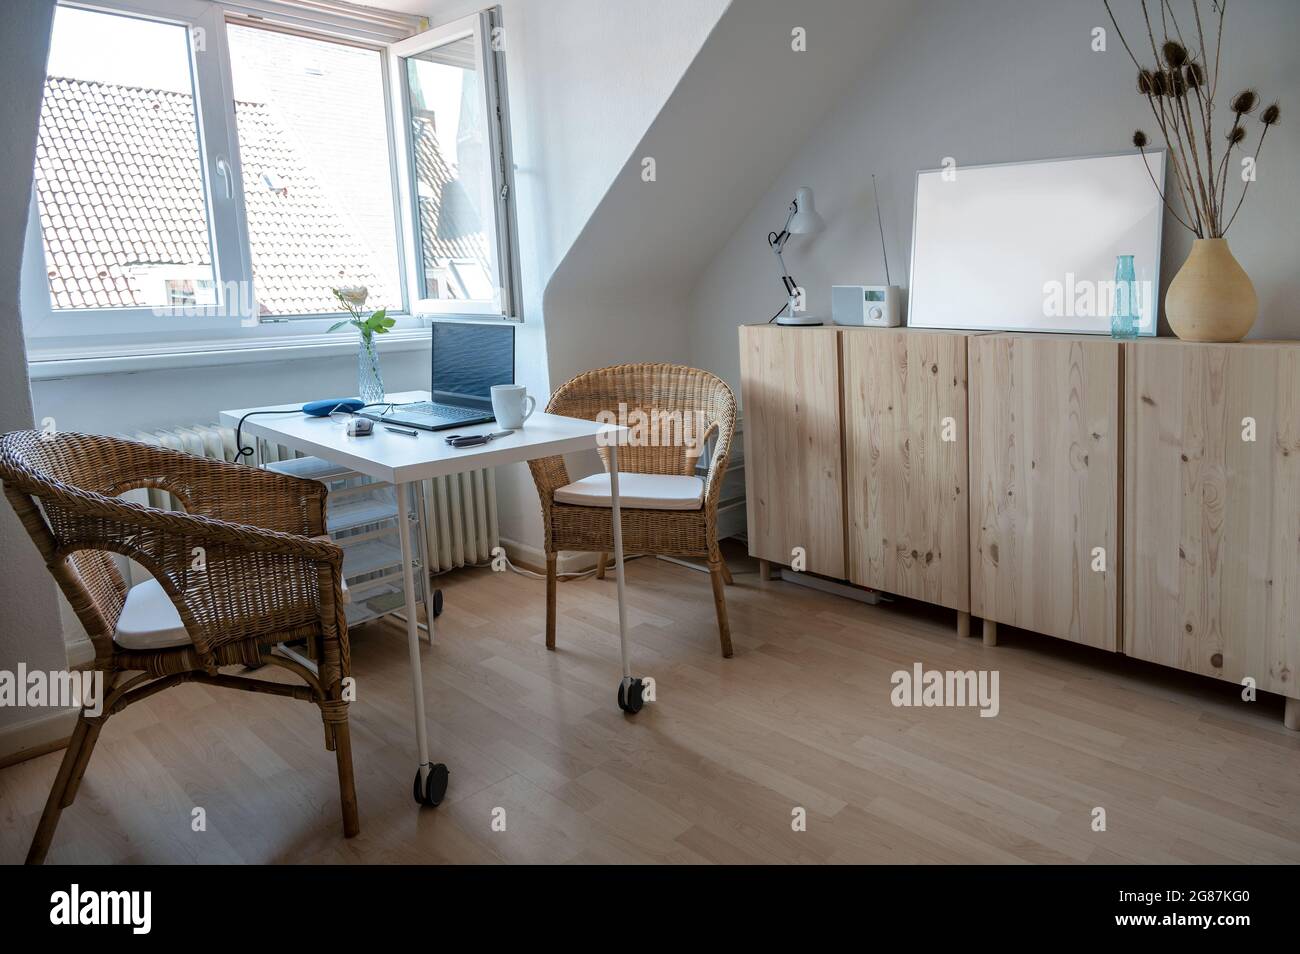 Piccolo appartamento mansardato con un tavolo da lavoro stretto per l'ufficio domestico, concetto per l'alloggio e il design interno in una proprietà affittata, fuoco selezionato Foto Stock